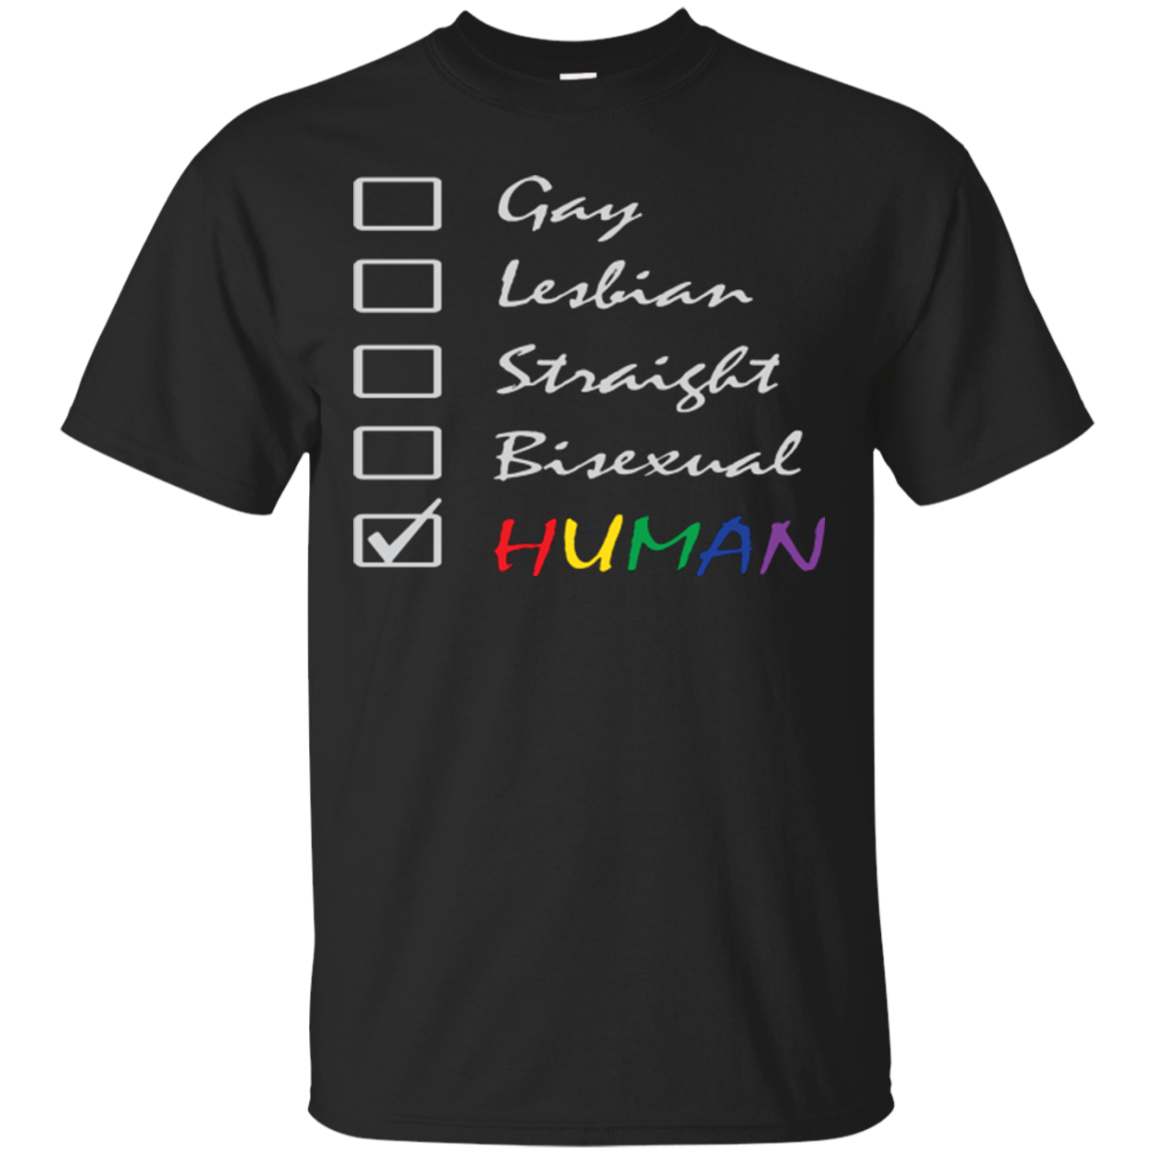 Human Check Box LGBT Pride black T Shirt Human Equality LGBT Pride Black Tshirt for Men